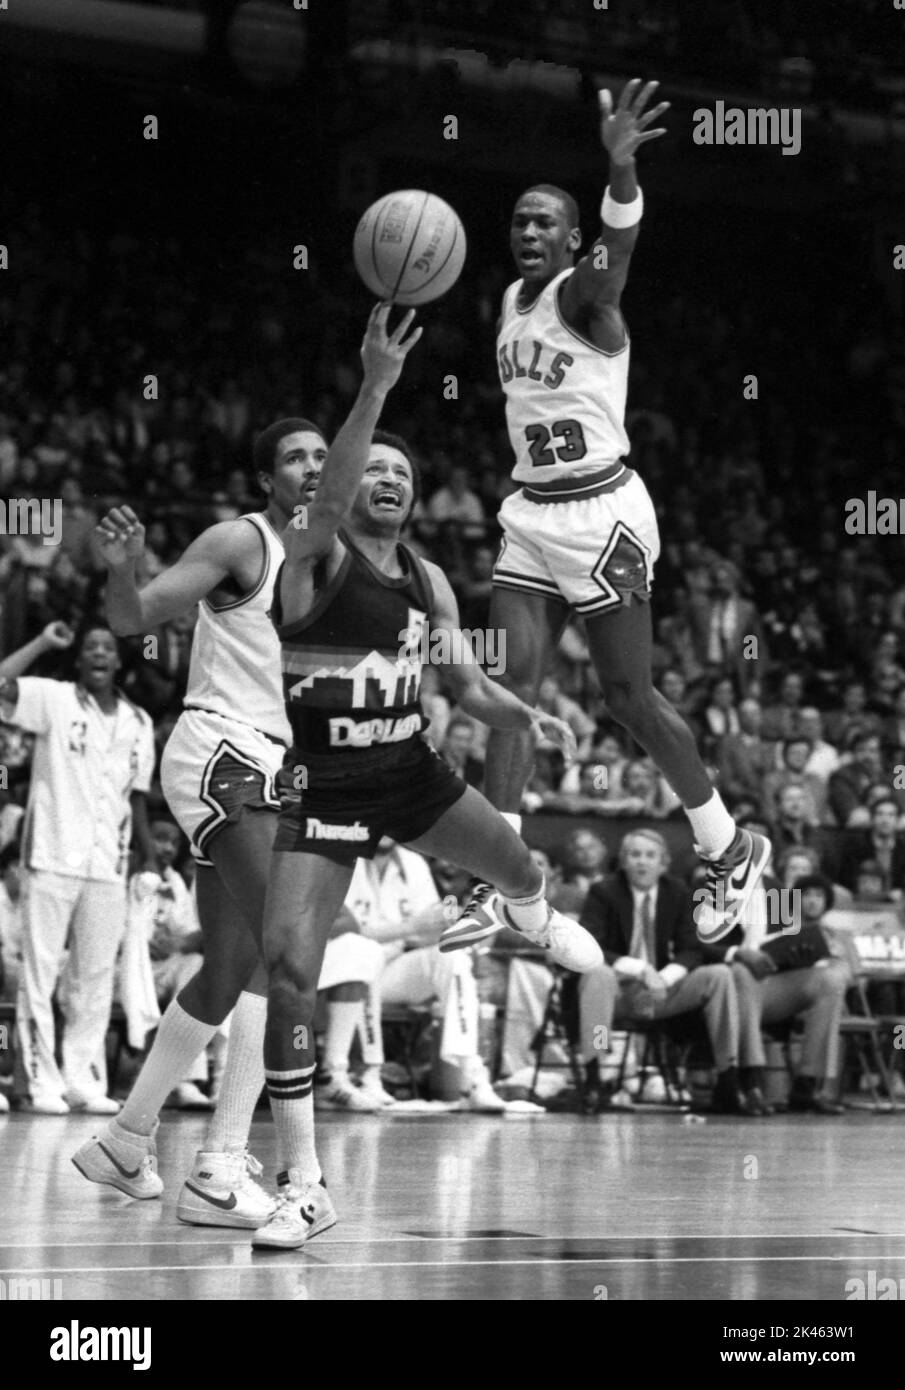 NBA-Superstar Michael Jordan von den Chicago Bulls fliegt, um einen Schuss während der Spielaktion im Jahr 1985 zu blockieren. Stockfoto